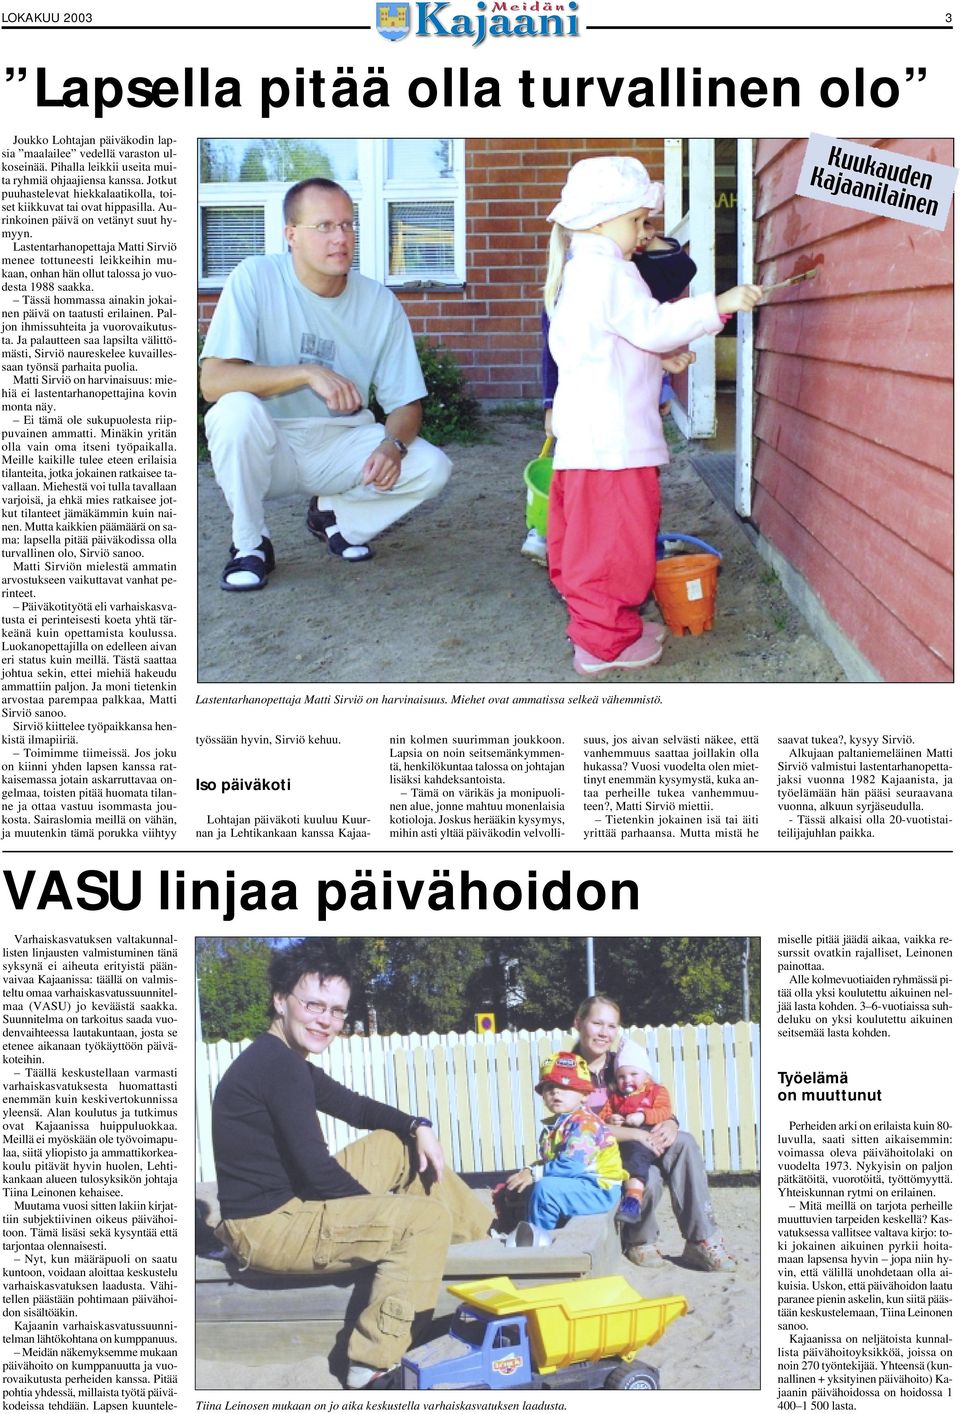 Lastentarhanopettaja Matti Sirviö menee tottuneesti leikkeihin mukaan, onhan hän ollut talossa jo vuodesta 1988 saakka. Tässä hommassa ainakin jokainen päivä on taatusti erilainen.